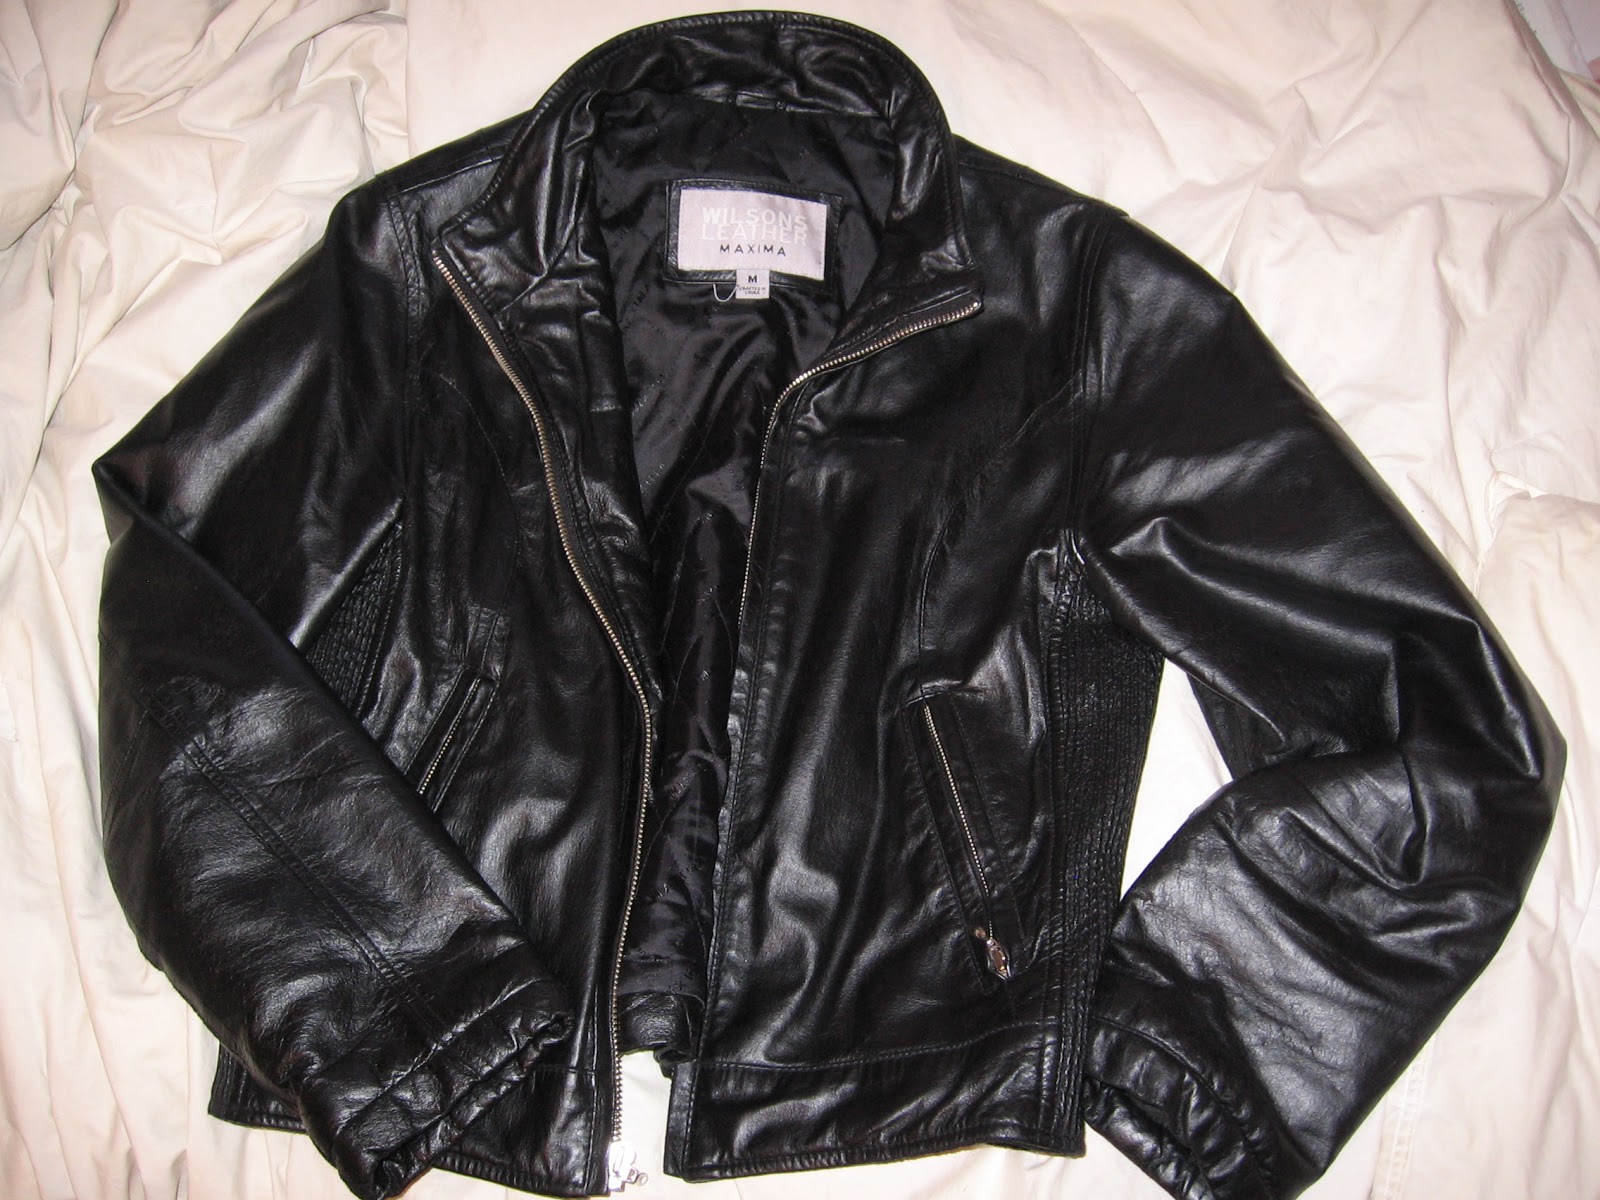 Girl Got Glitter: Ultimate Thrift: Wilsons Leather Jacket for Under $50